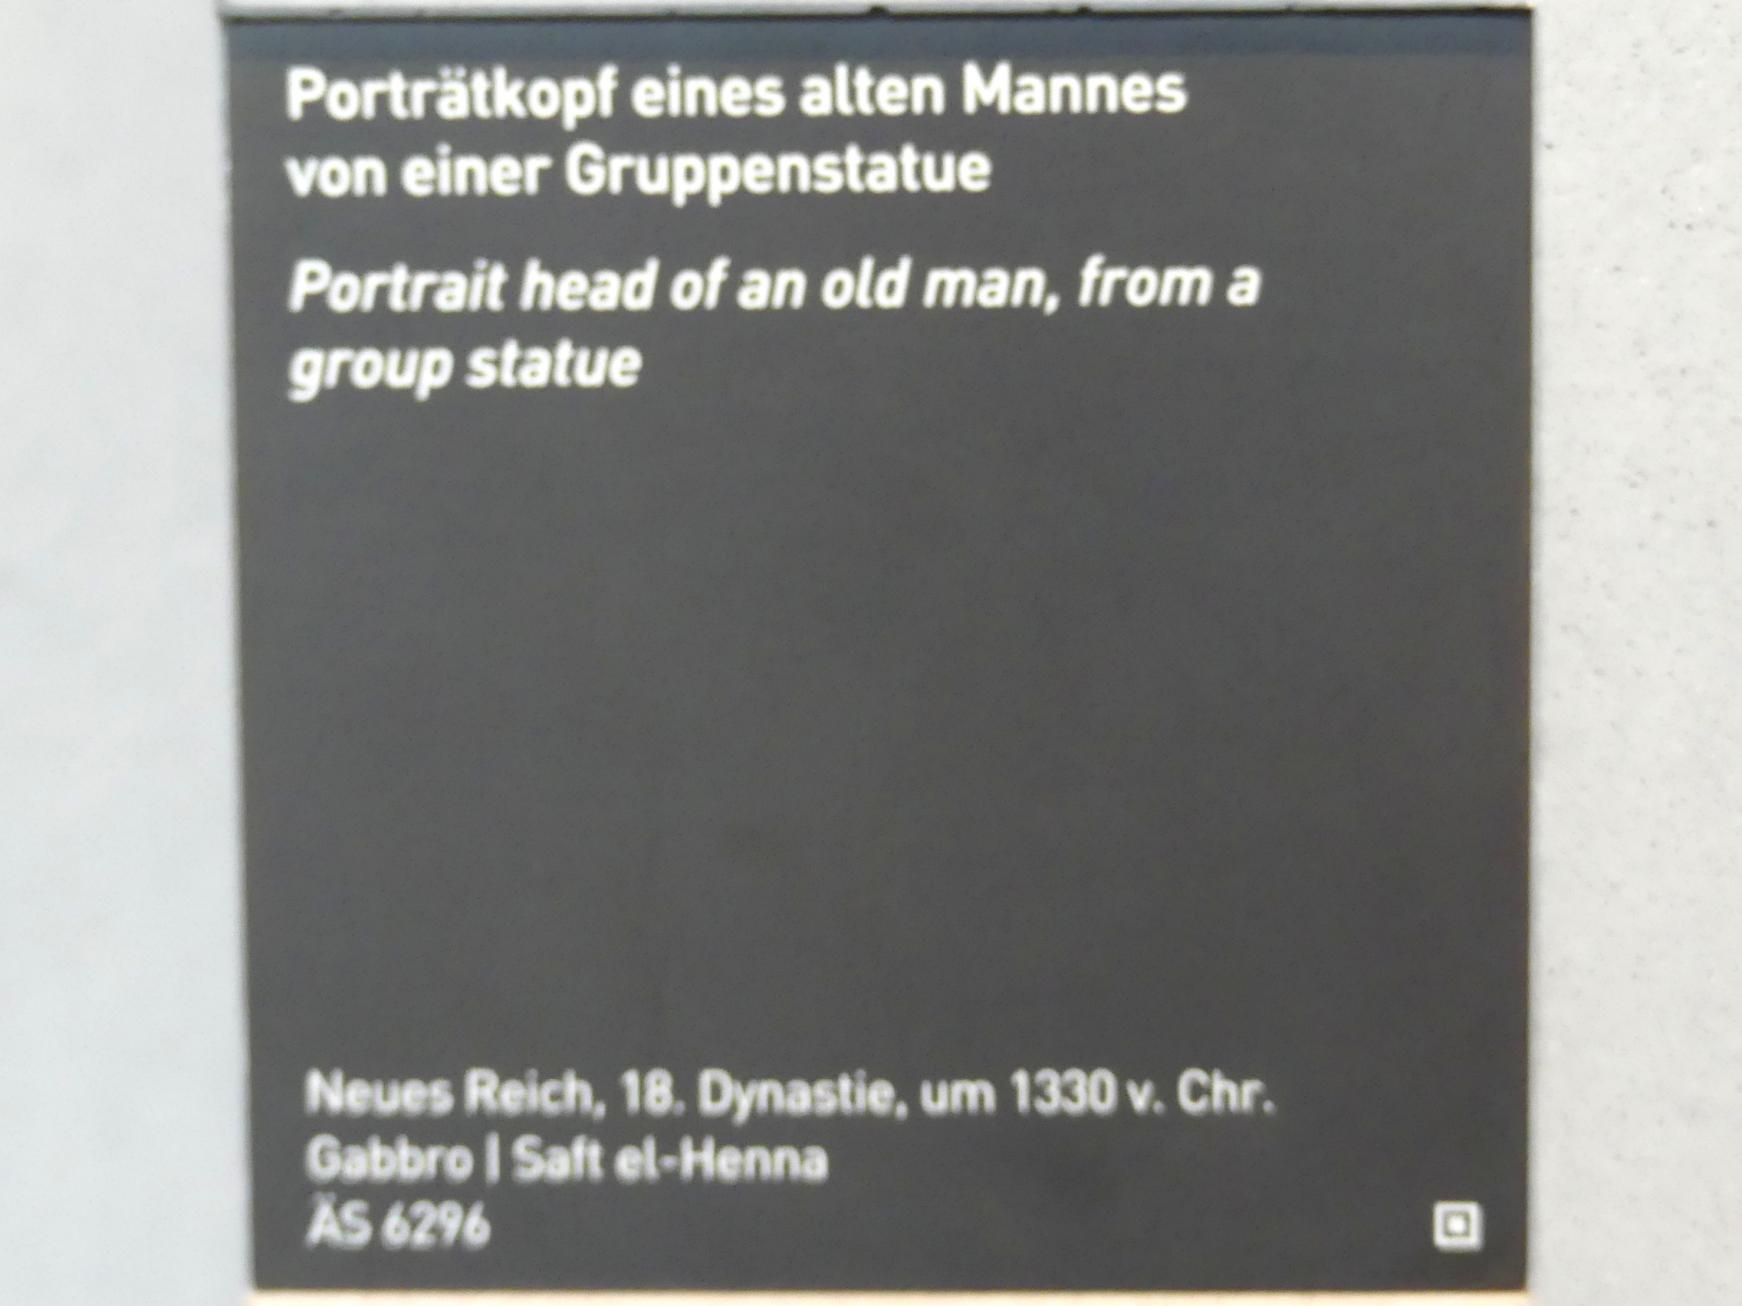 Porträtkopf eines alten Mannes von einer Gruppenstatue, 18. Dynastie, Undatiert, 1330 v. Chr., Bild 3/3